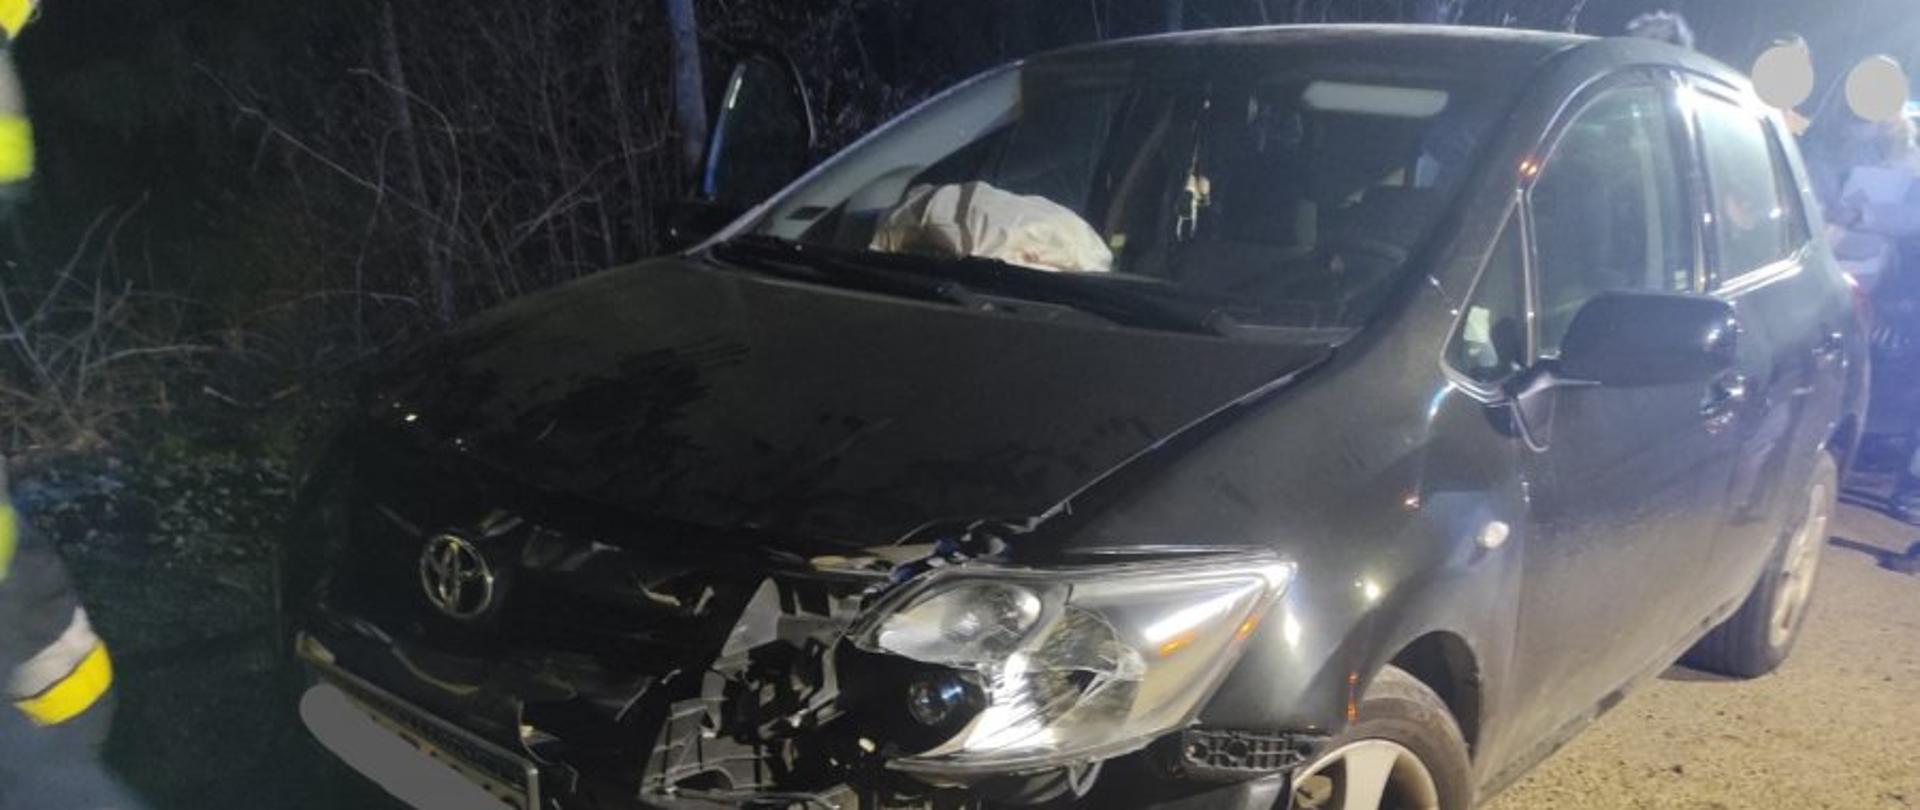 Zdjęcie przedstawia rozbity czarny samochód osobowy. W dalszym planie widzimy osoby postronne obserwujące zdarzenie. Zdarzenie w porze nocnej